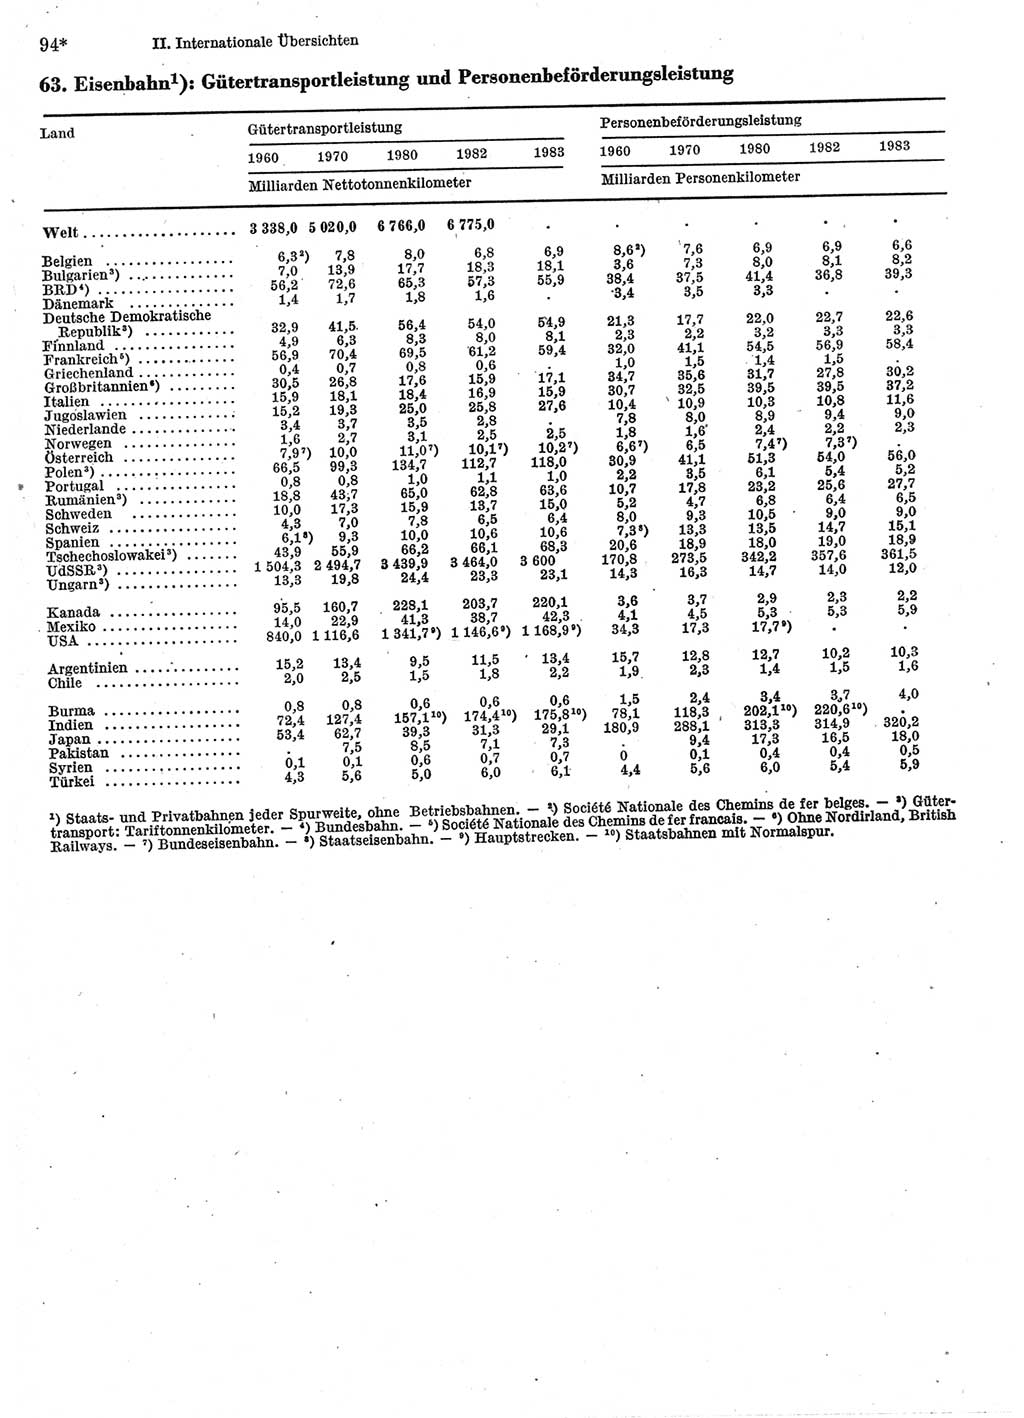 Statistisches Jahrbuch der Deutschen Demokratischen Republik (DDR) 1985, Seite 94 (Stat. Jb. DDR 1985, S. 94)